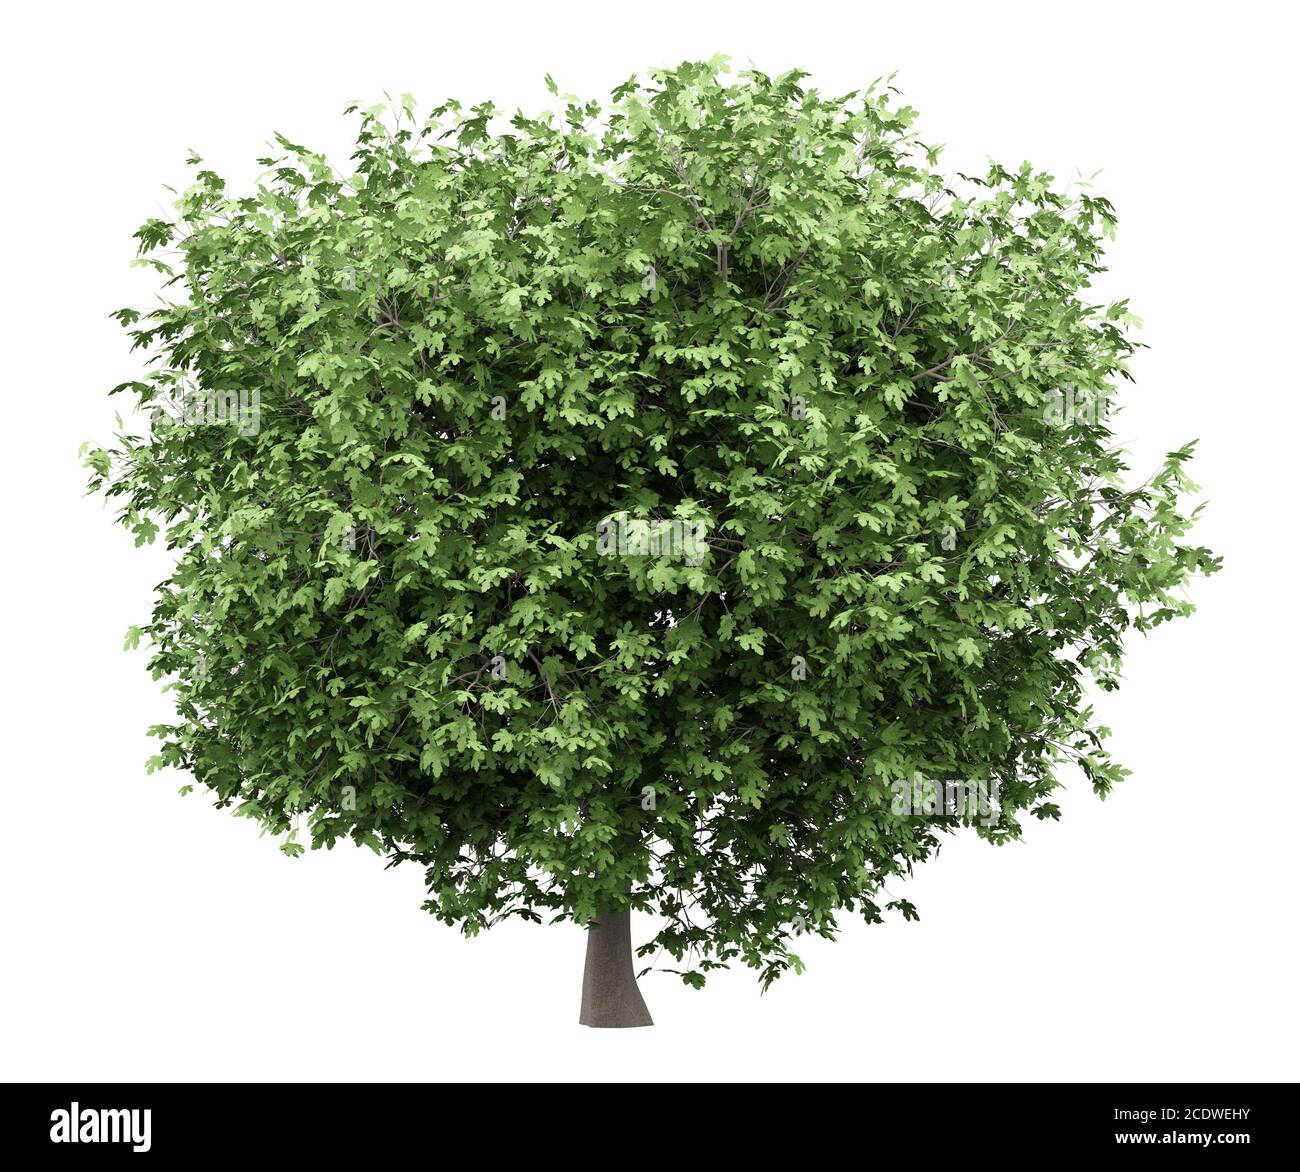 arbre de figues commun isolé sur fond blanc Banque D'Images